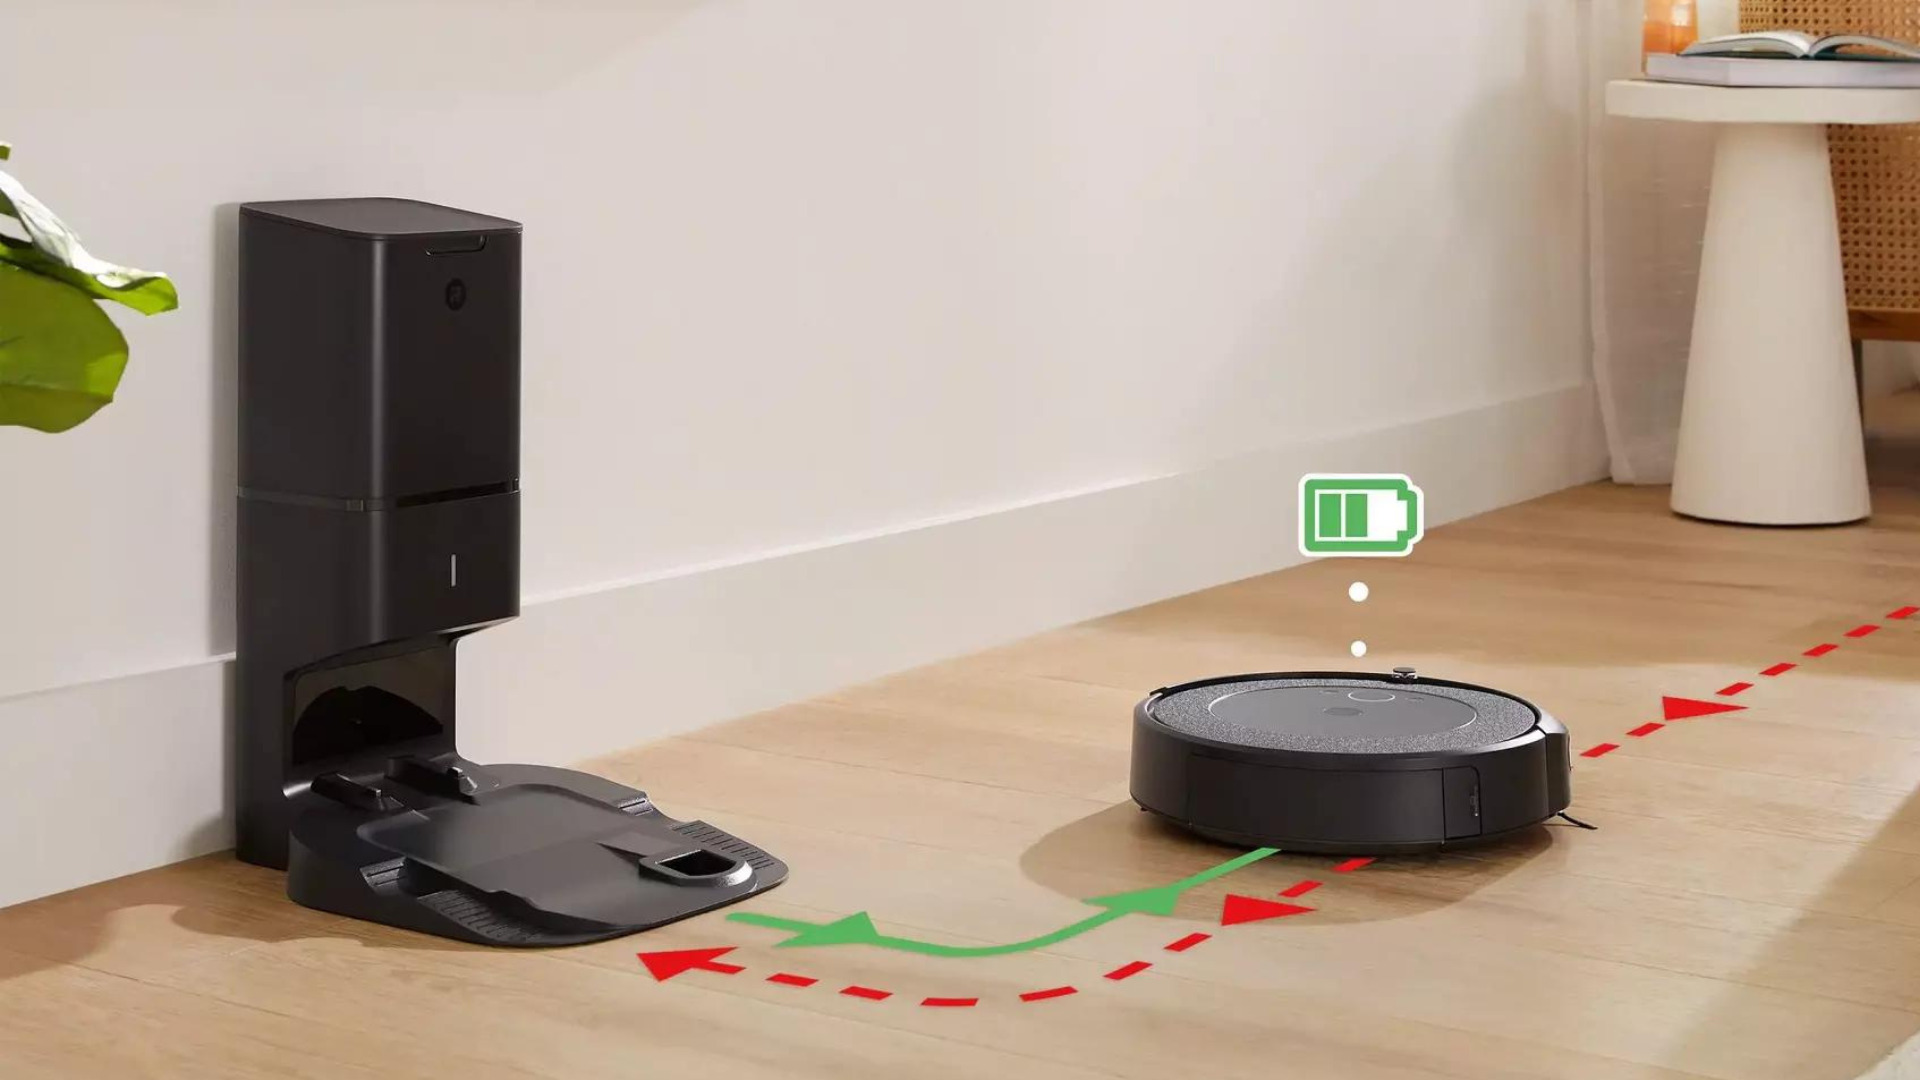 Sorti cet été, l'aspirateur robot Roomba Combo i5+ est déjà en promo -  Numerama